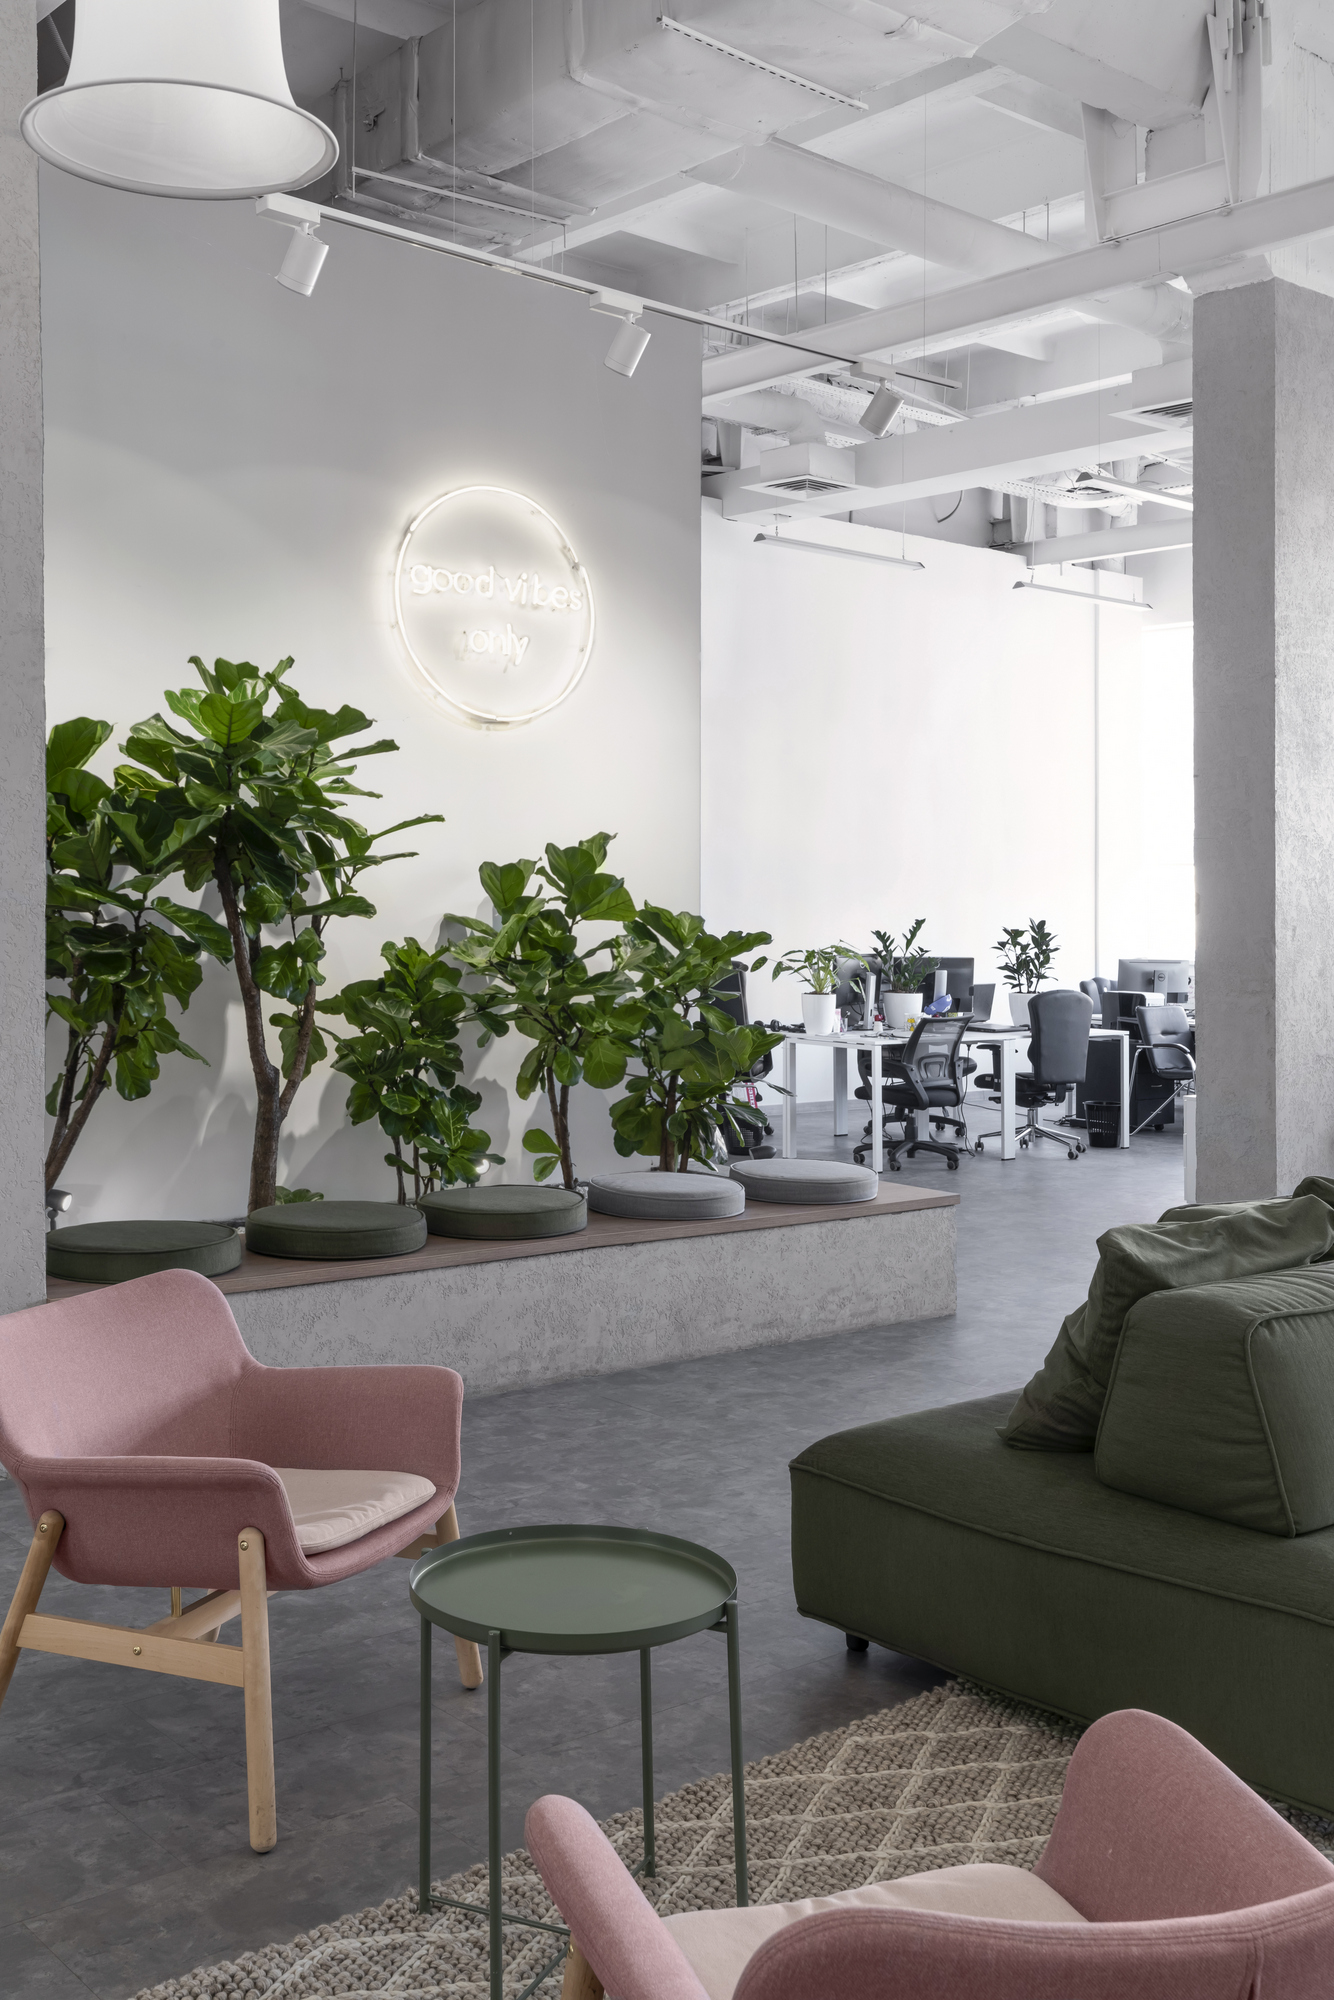 Genesis办公室-基辅|ART-Arrakis | 建筑室内设计的创新与灵感